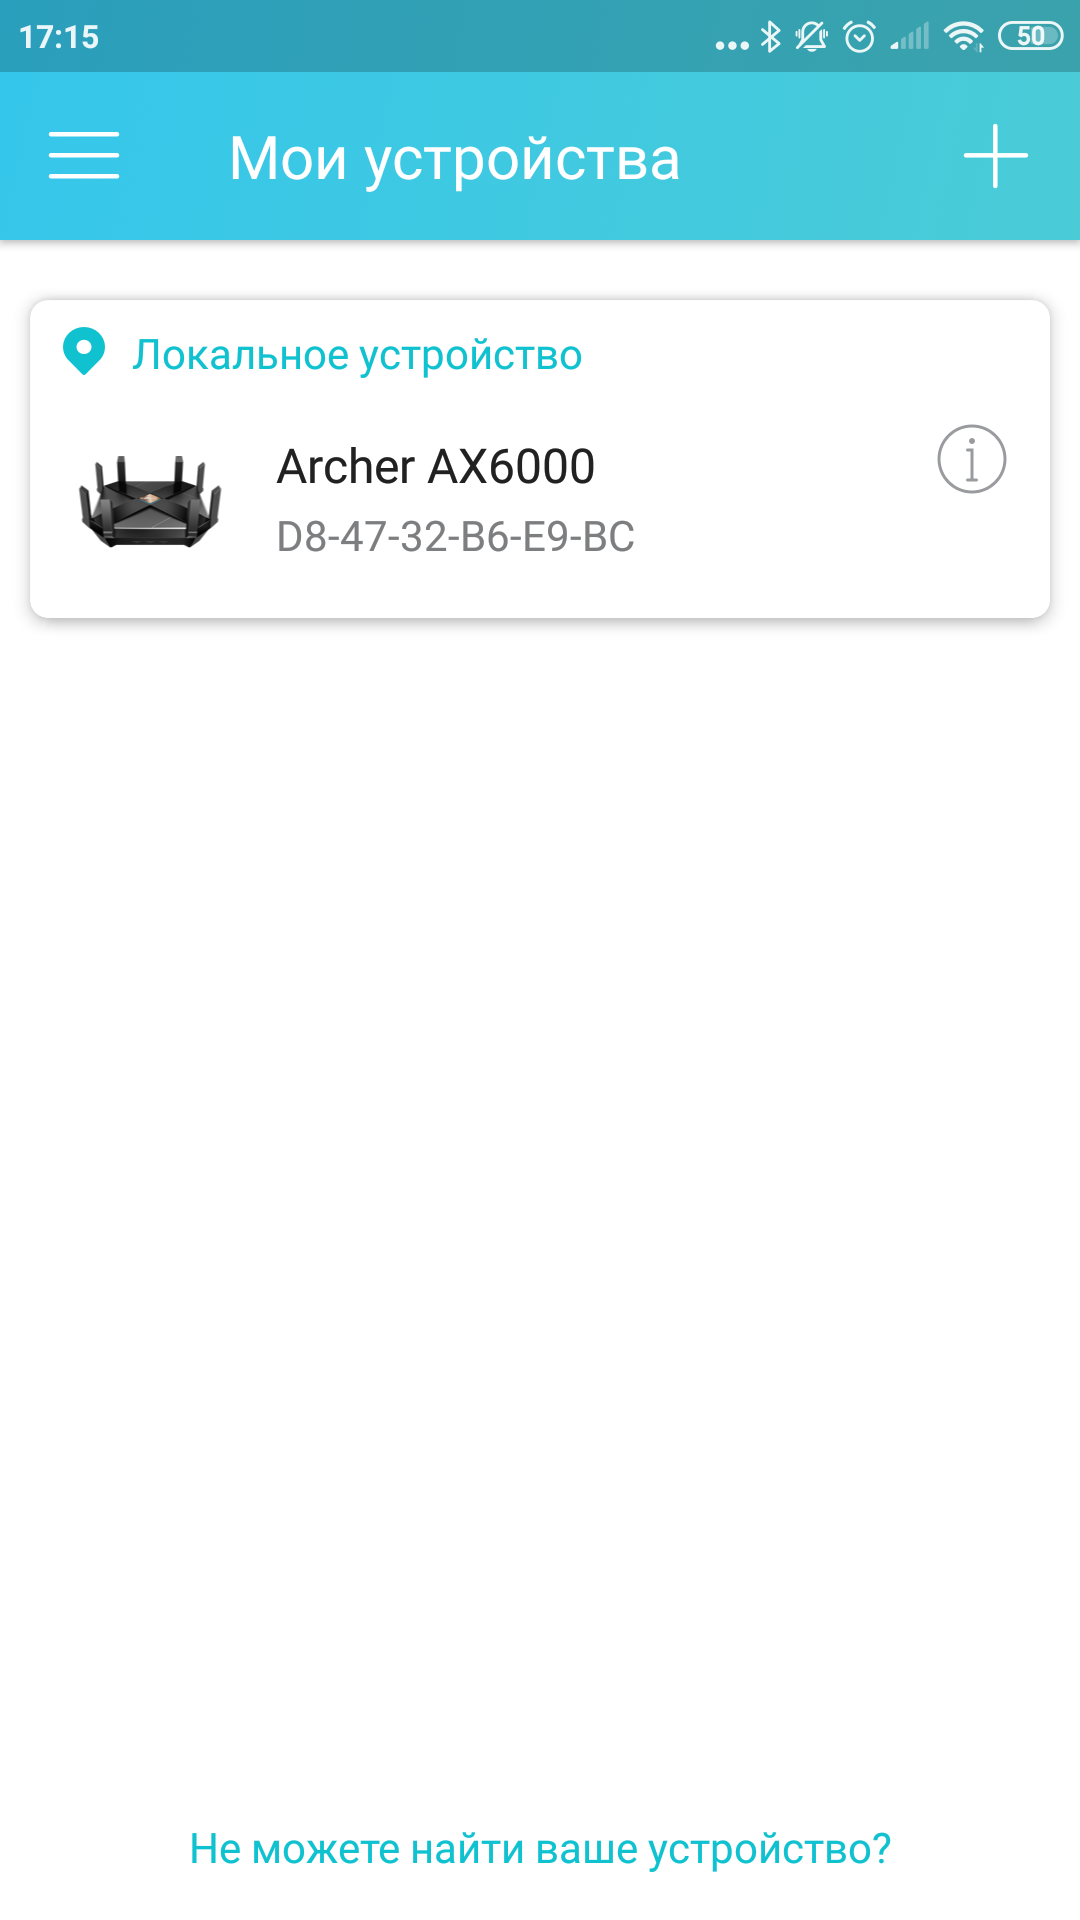 Обзор TP-Link Archer AX6000: топовый роутер с поддержкой Wi-Fi 6-22